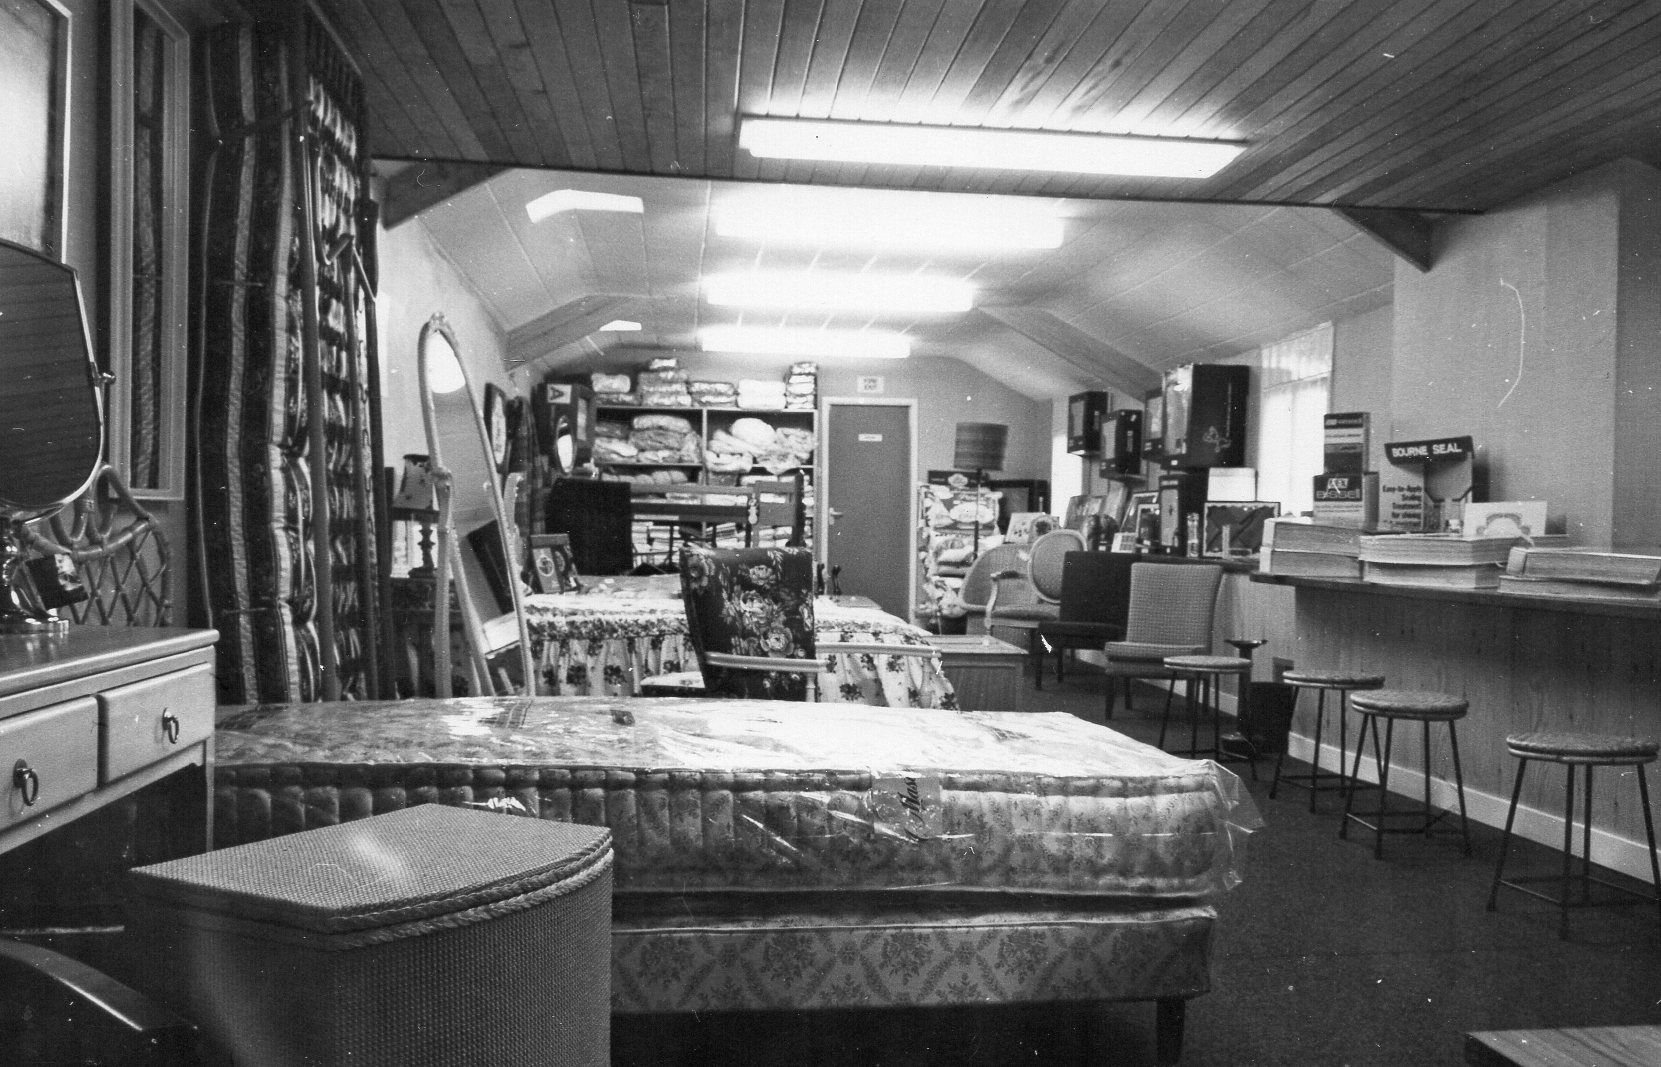 First floor bed showroom in the 1950s